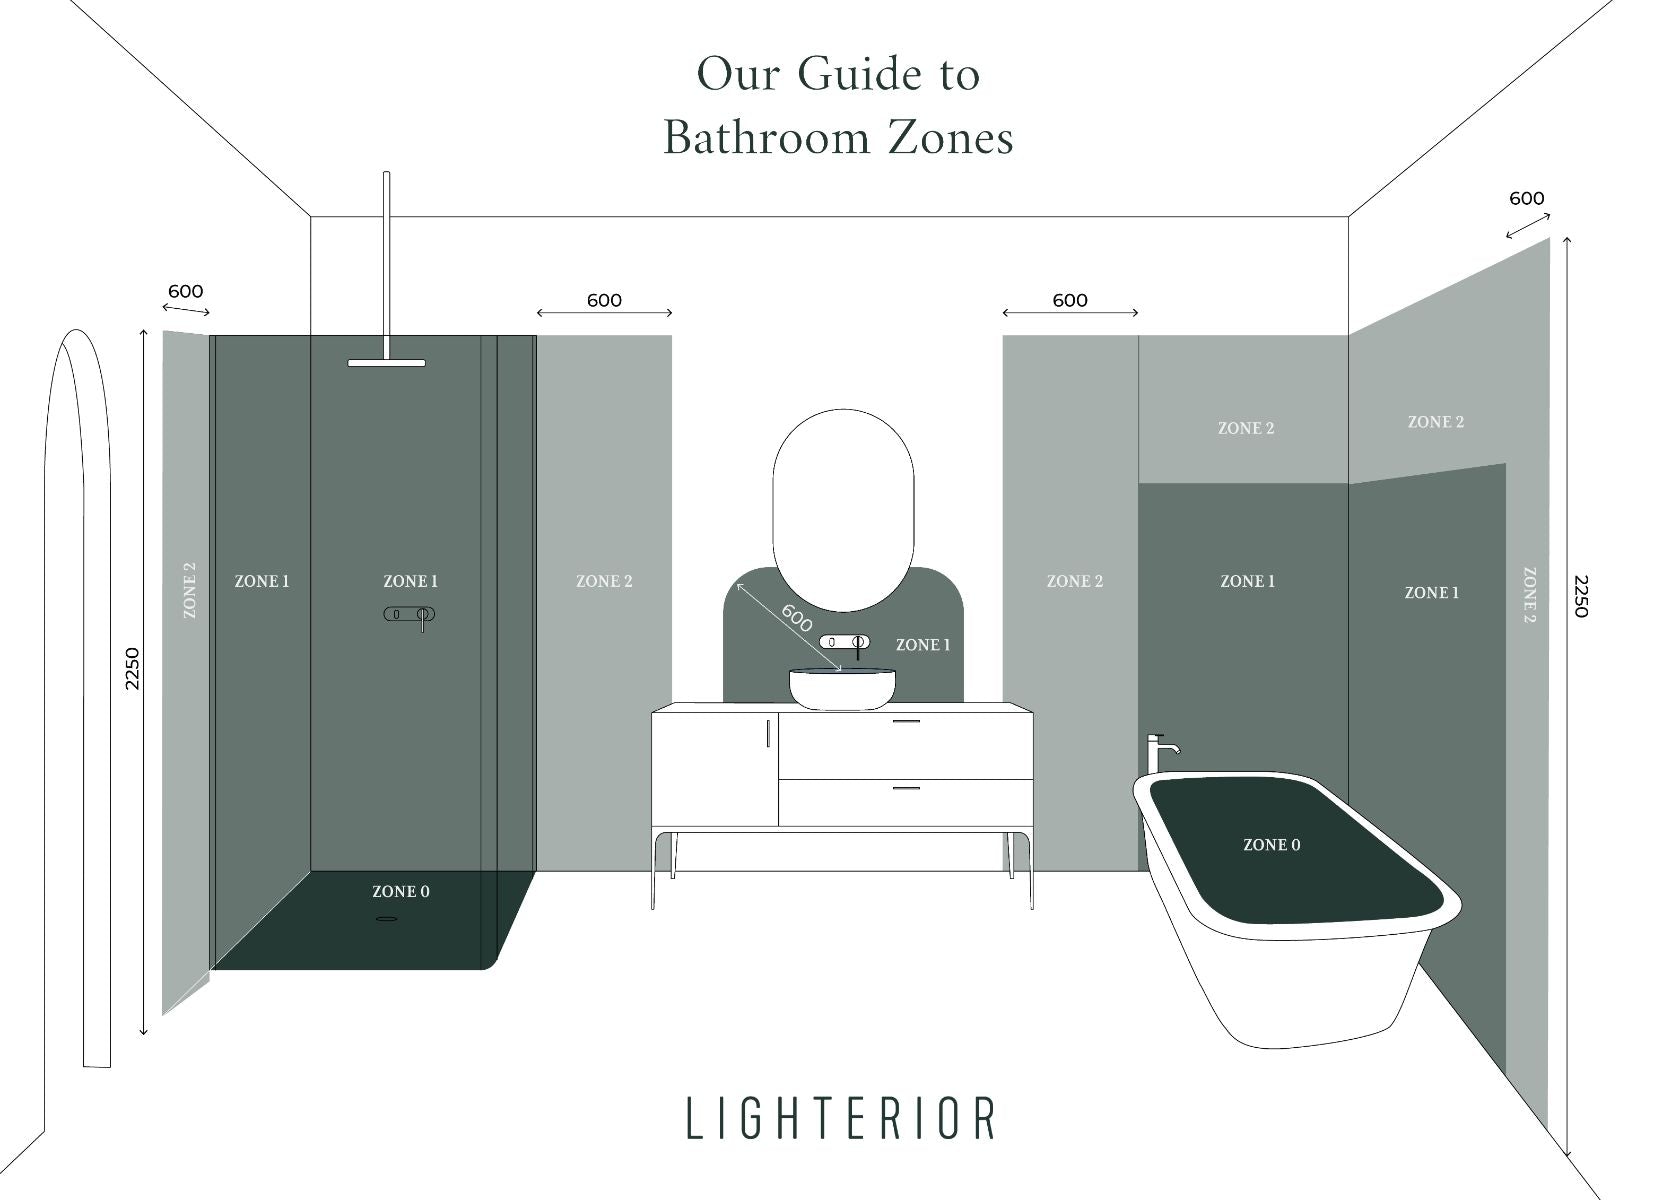 Lighterior Bathroom Zones Guide